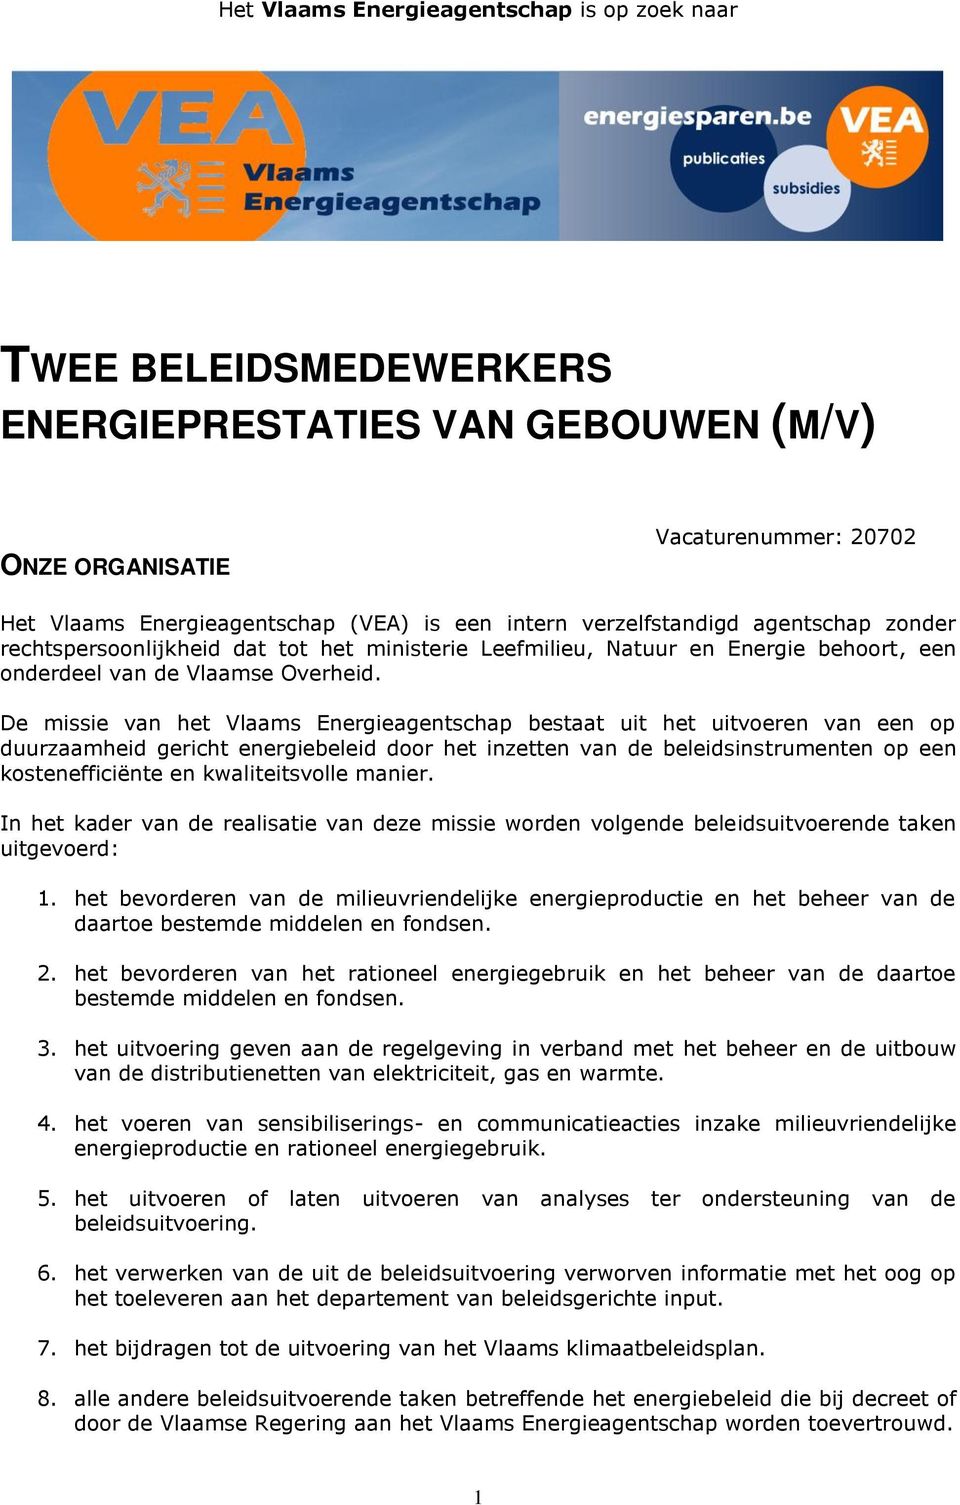 De missie van het Vlaams Energieagentschap bestaat uit het uitvoeren van een op duurzaamheid gericht energiebeleid door het inzetten van de beleidsinstrumenten op een kostenefficiënte en